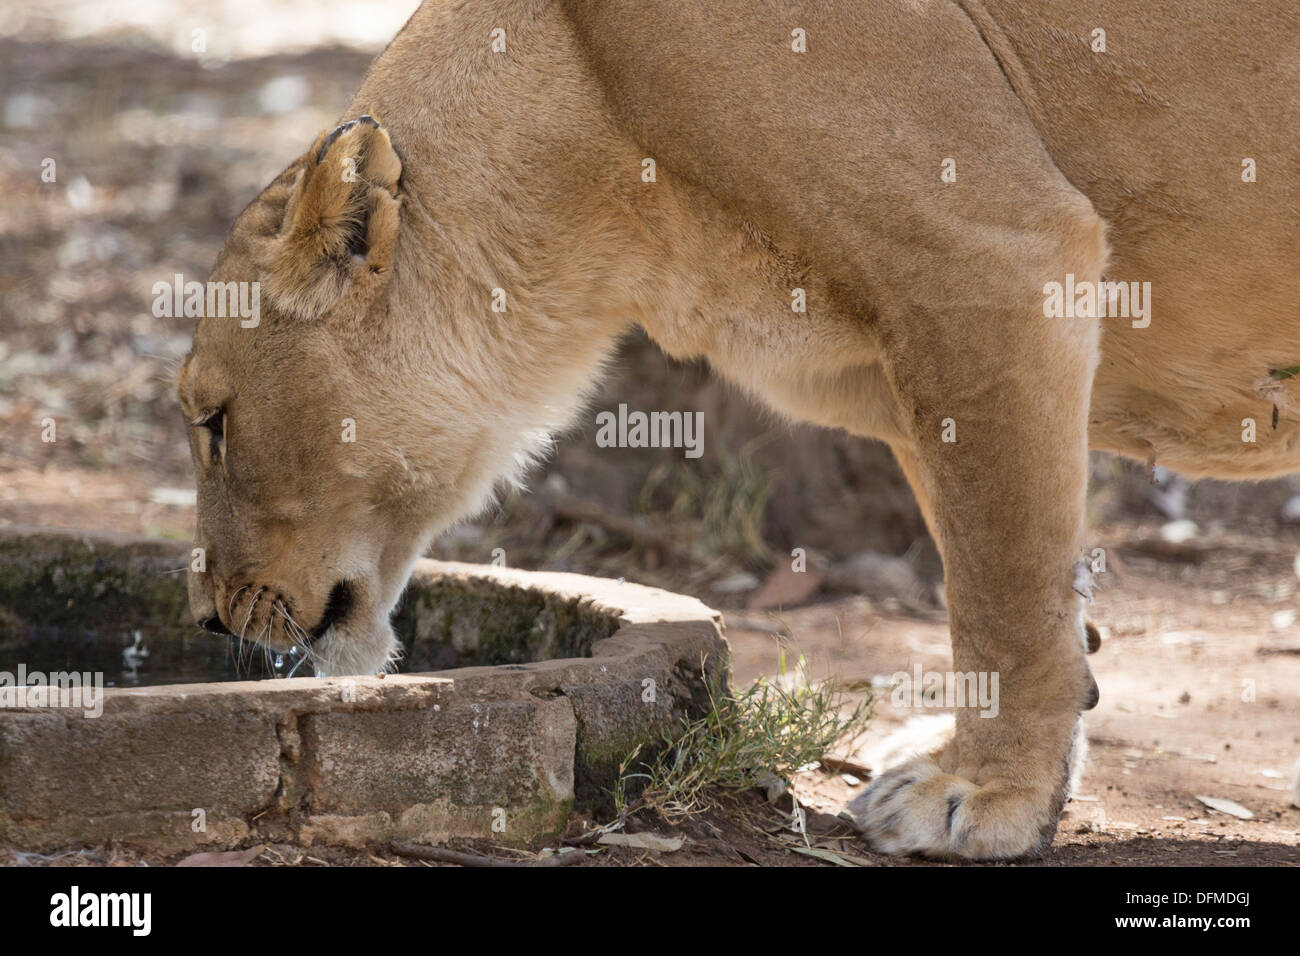 Una femmina adulta lion acqua potabile al di fuori di un piccolo pozzo di acqua Foto Stock